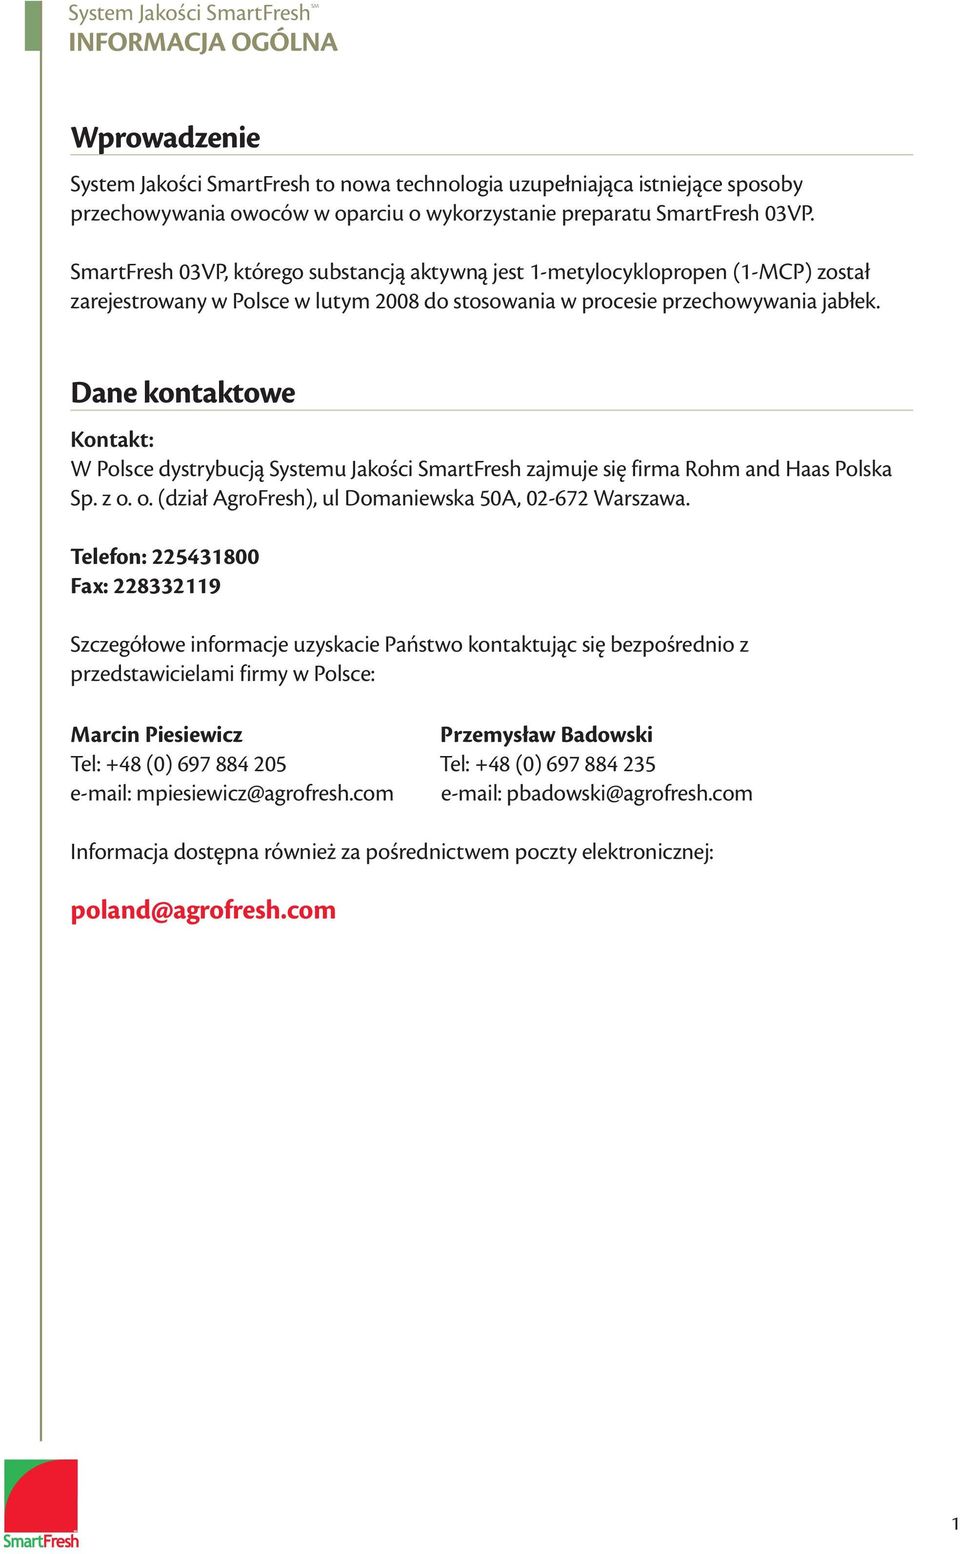 Dane kontaktowe Kontakt: W Polsce dystrybucją Systemu Jakości SmartFresh zajmuje się firma Rohm and Haas Polska Sp. z o. o. (dział AgroFresh), ul Domaniewska 50A, 02-672 Warszawa.